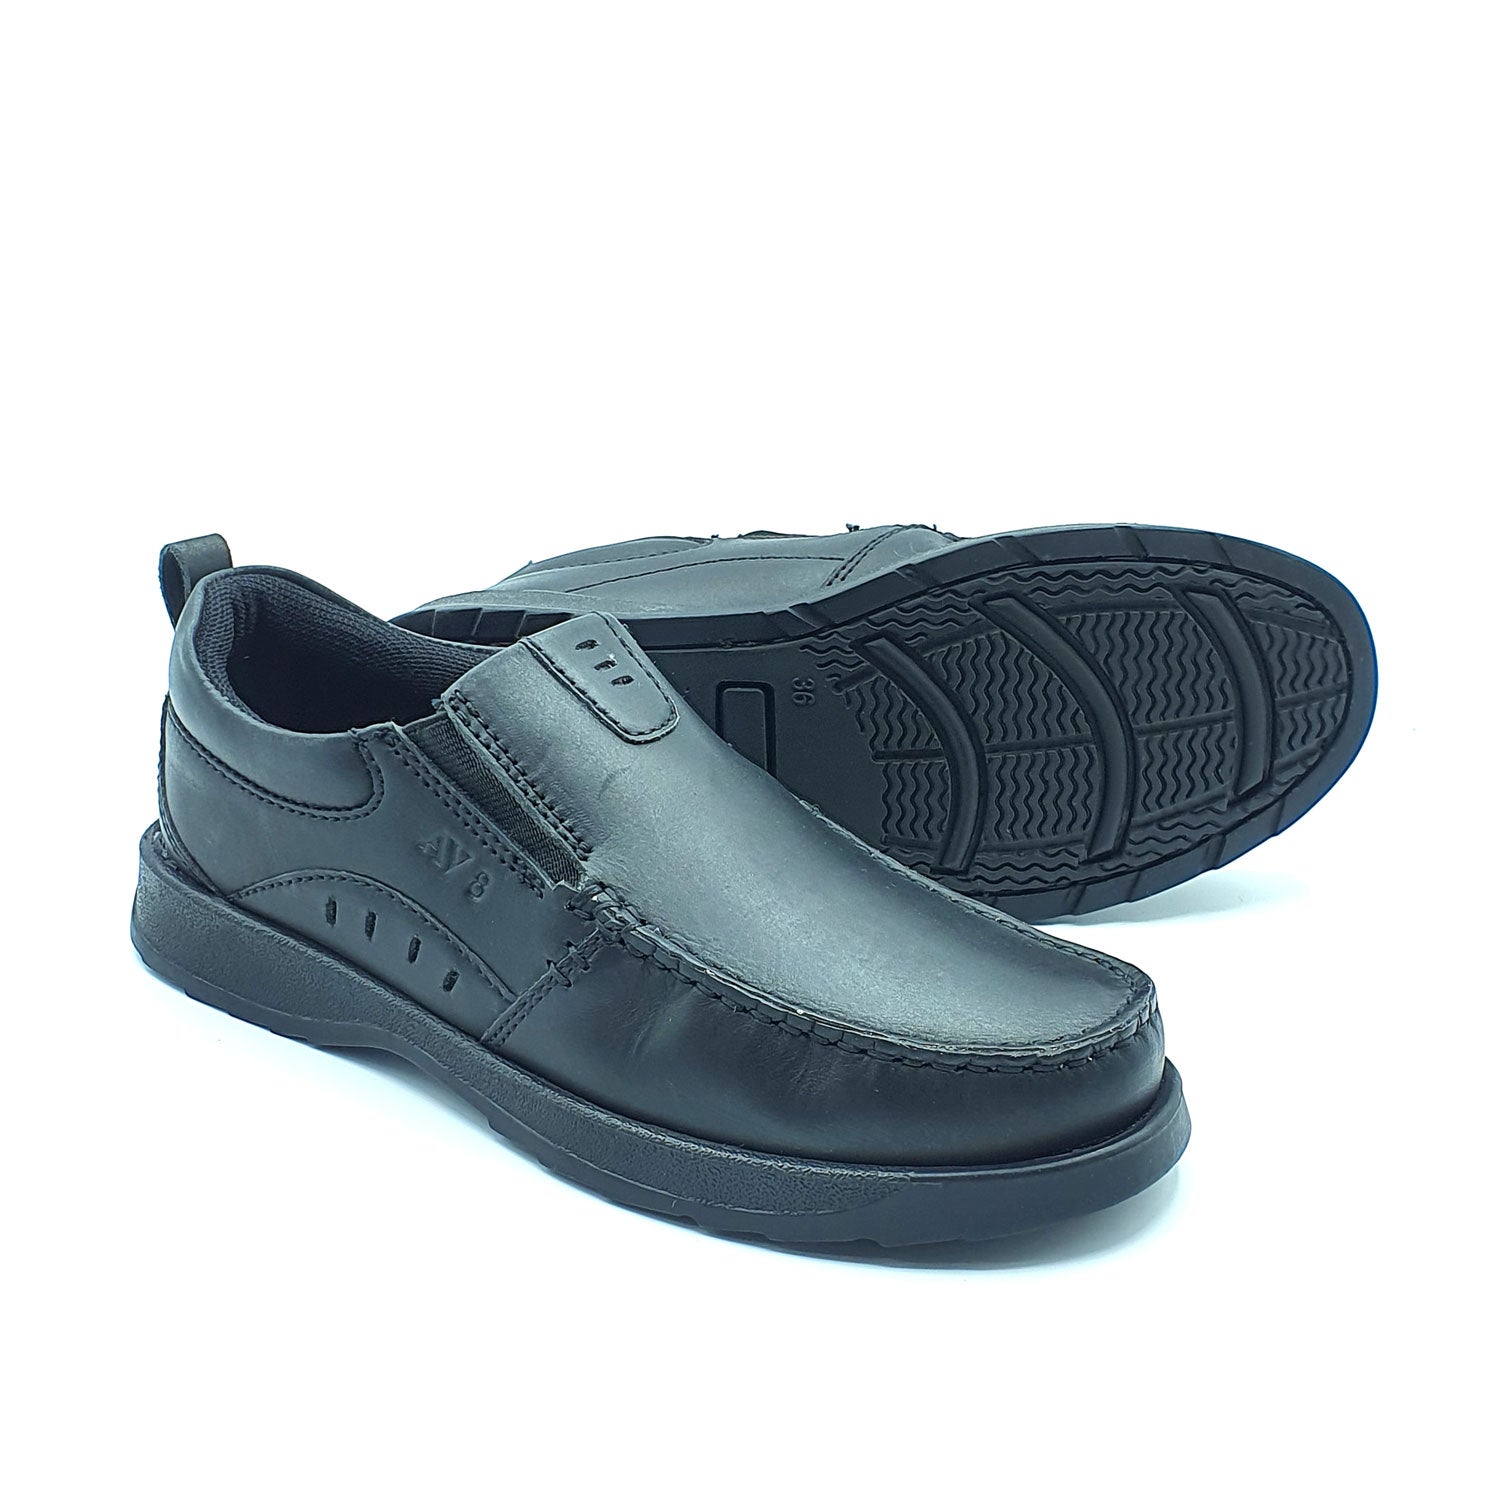 Dubarry Karter Junior Slip On Av8 Shoe - Black 4 Shaws Department Stores